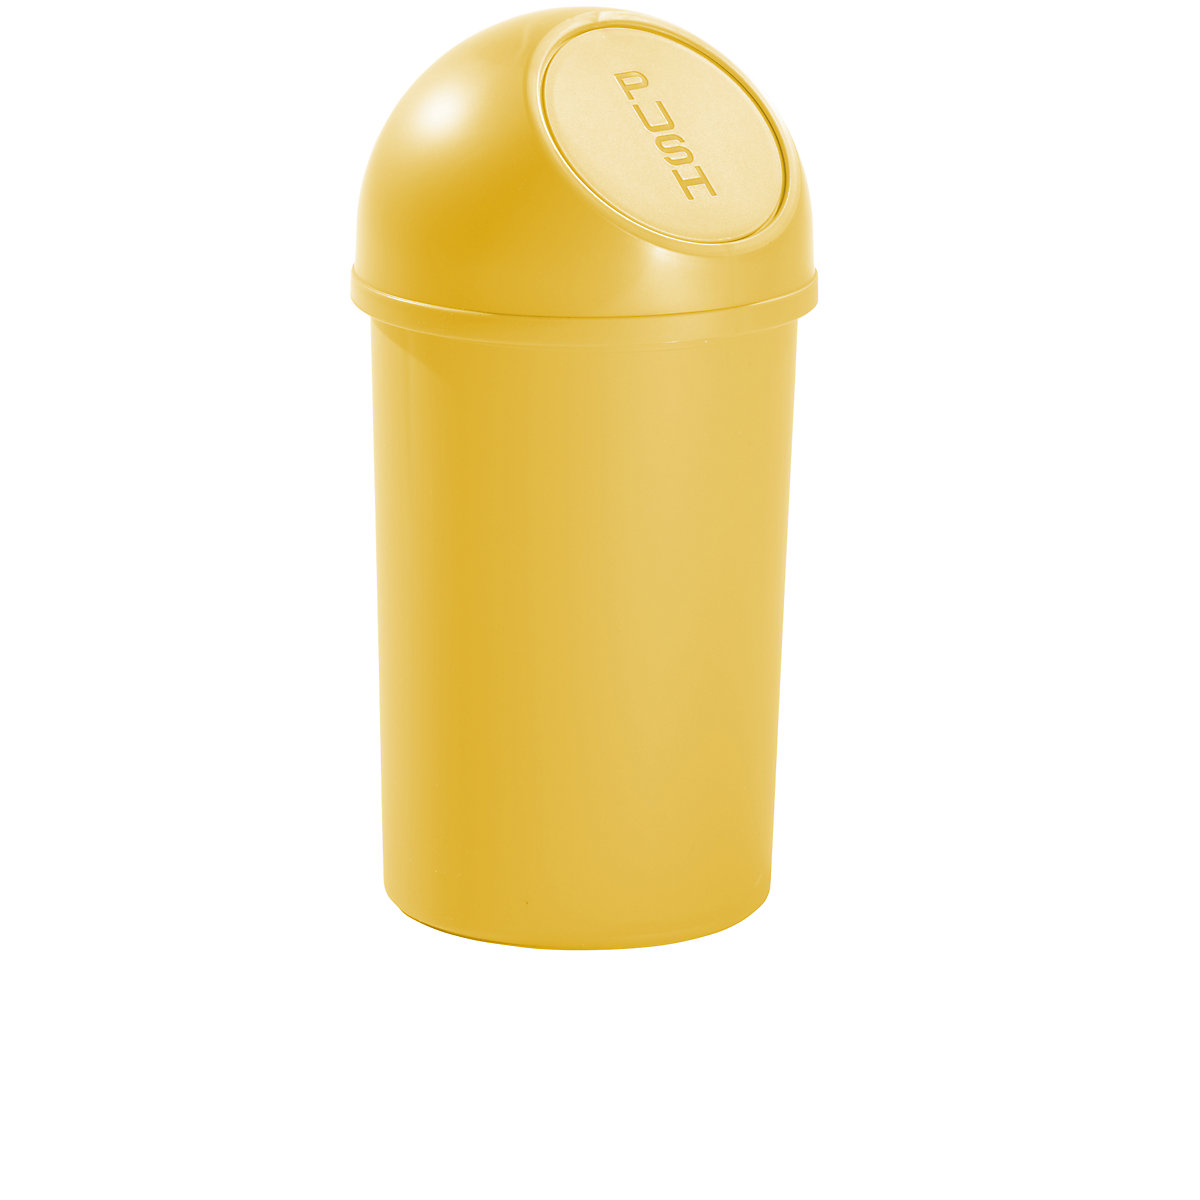 Plastični spremnik za otpad s otvaranjem na pritisak – helit, volumen 13 l, VxØ 490 x 252 mm, u žutoj boji, pak. 6 kom.-5